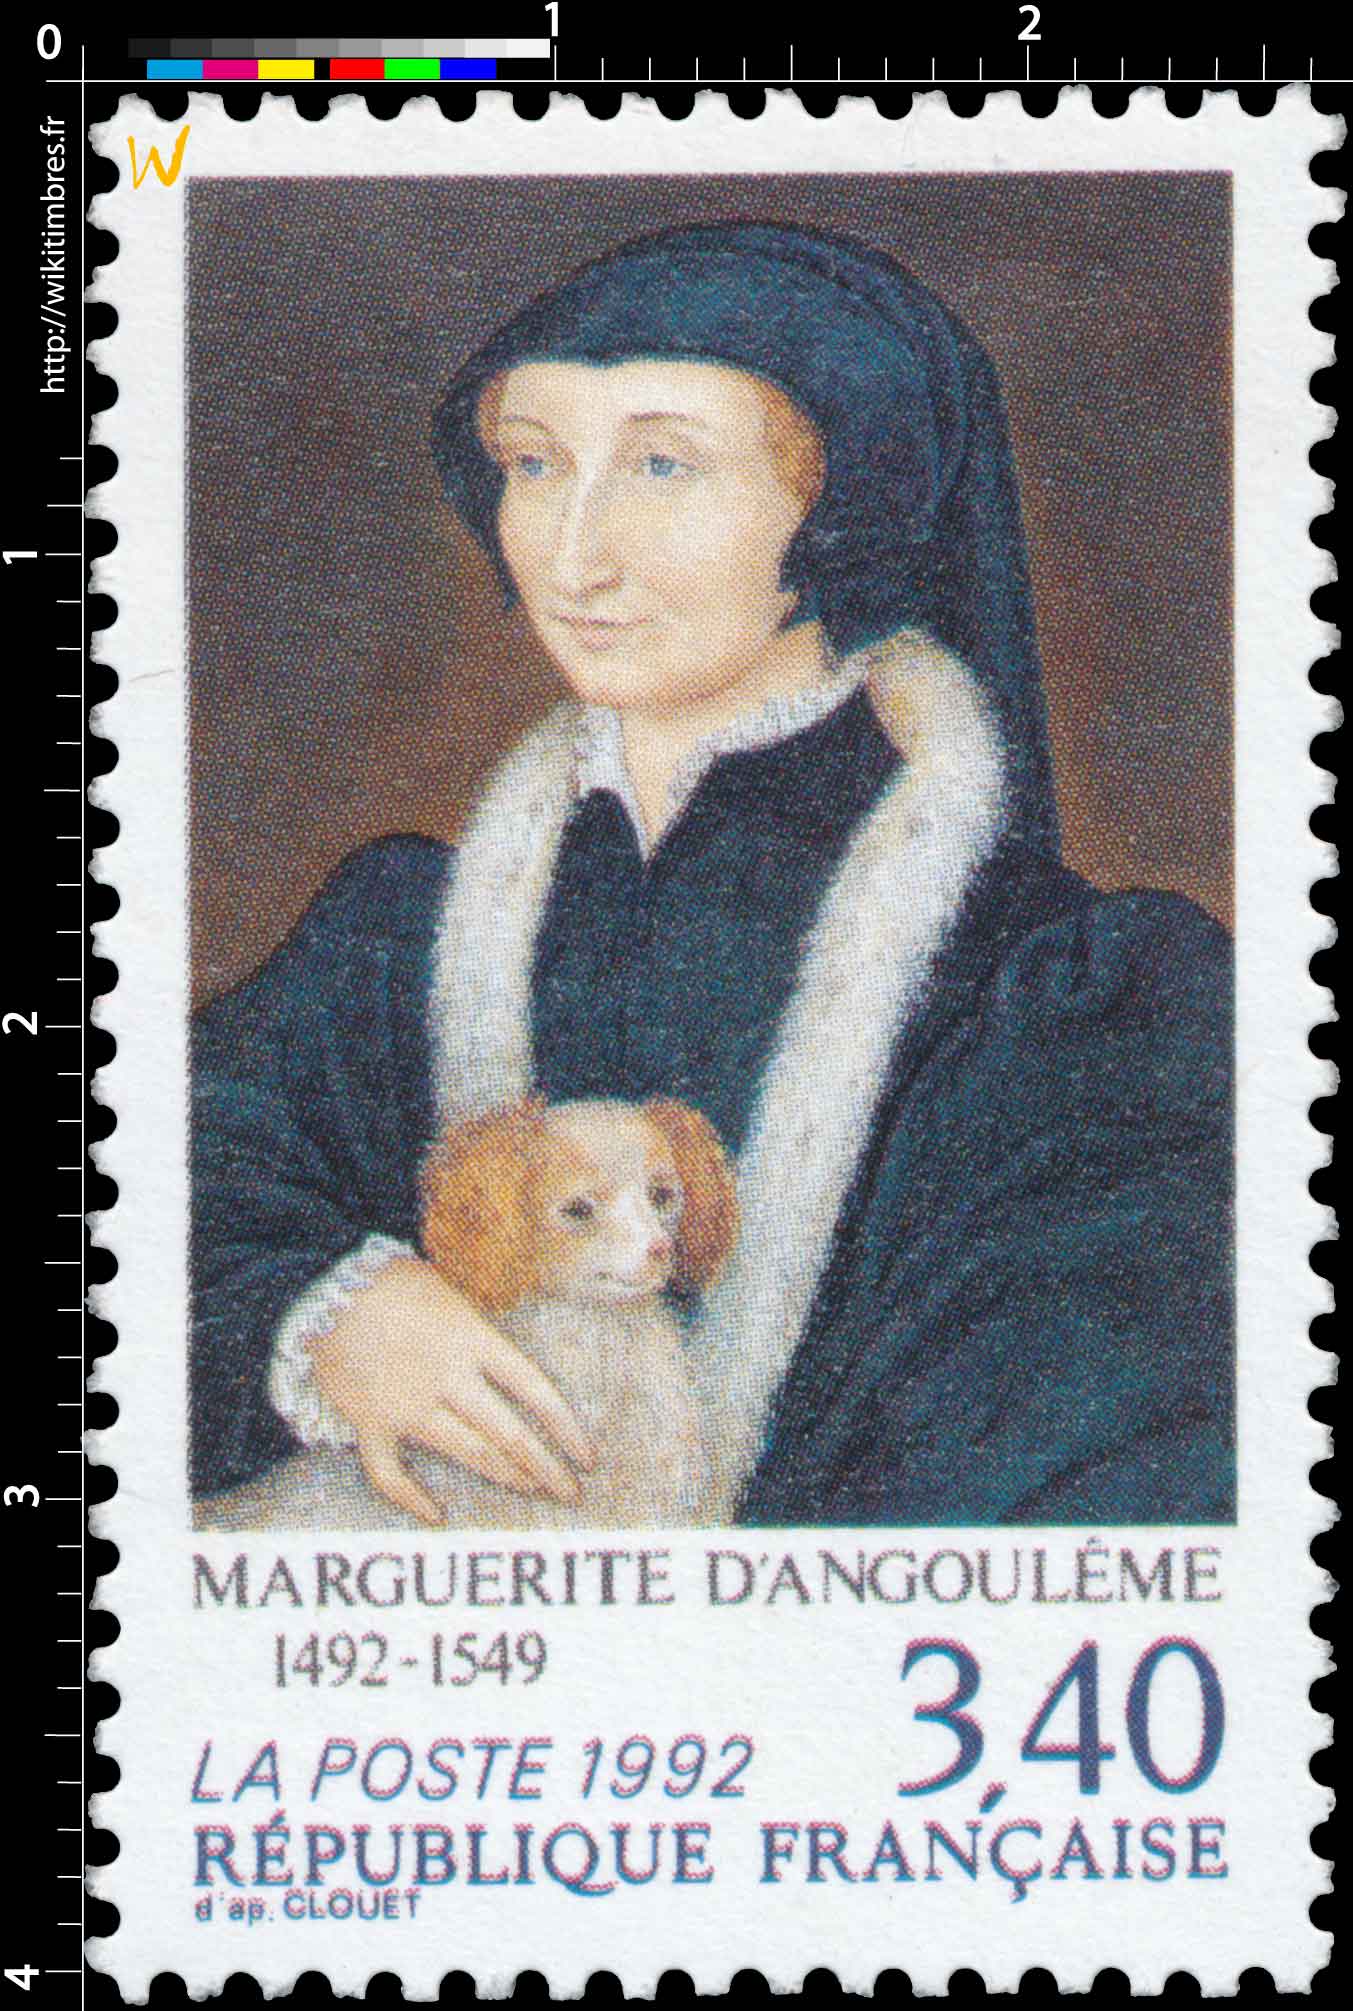 1992 MARGUERITE D'ANGOULÊME 1492-1549